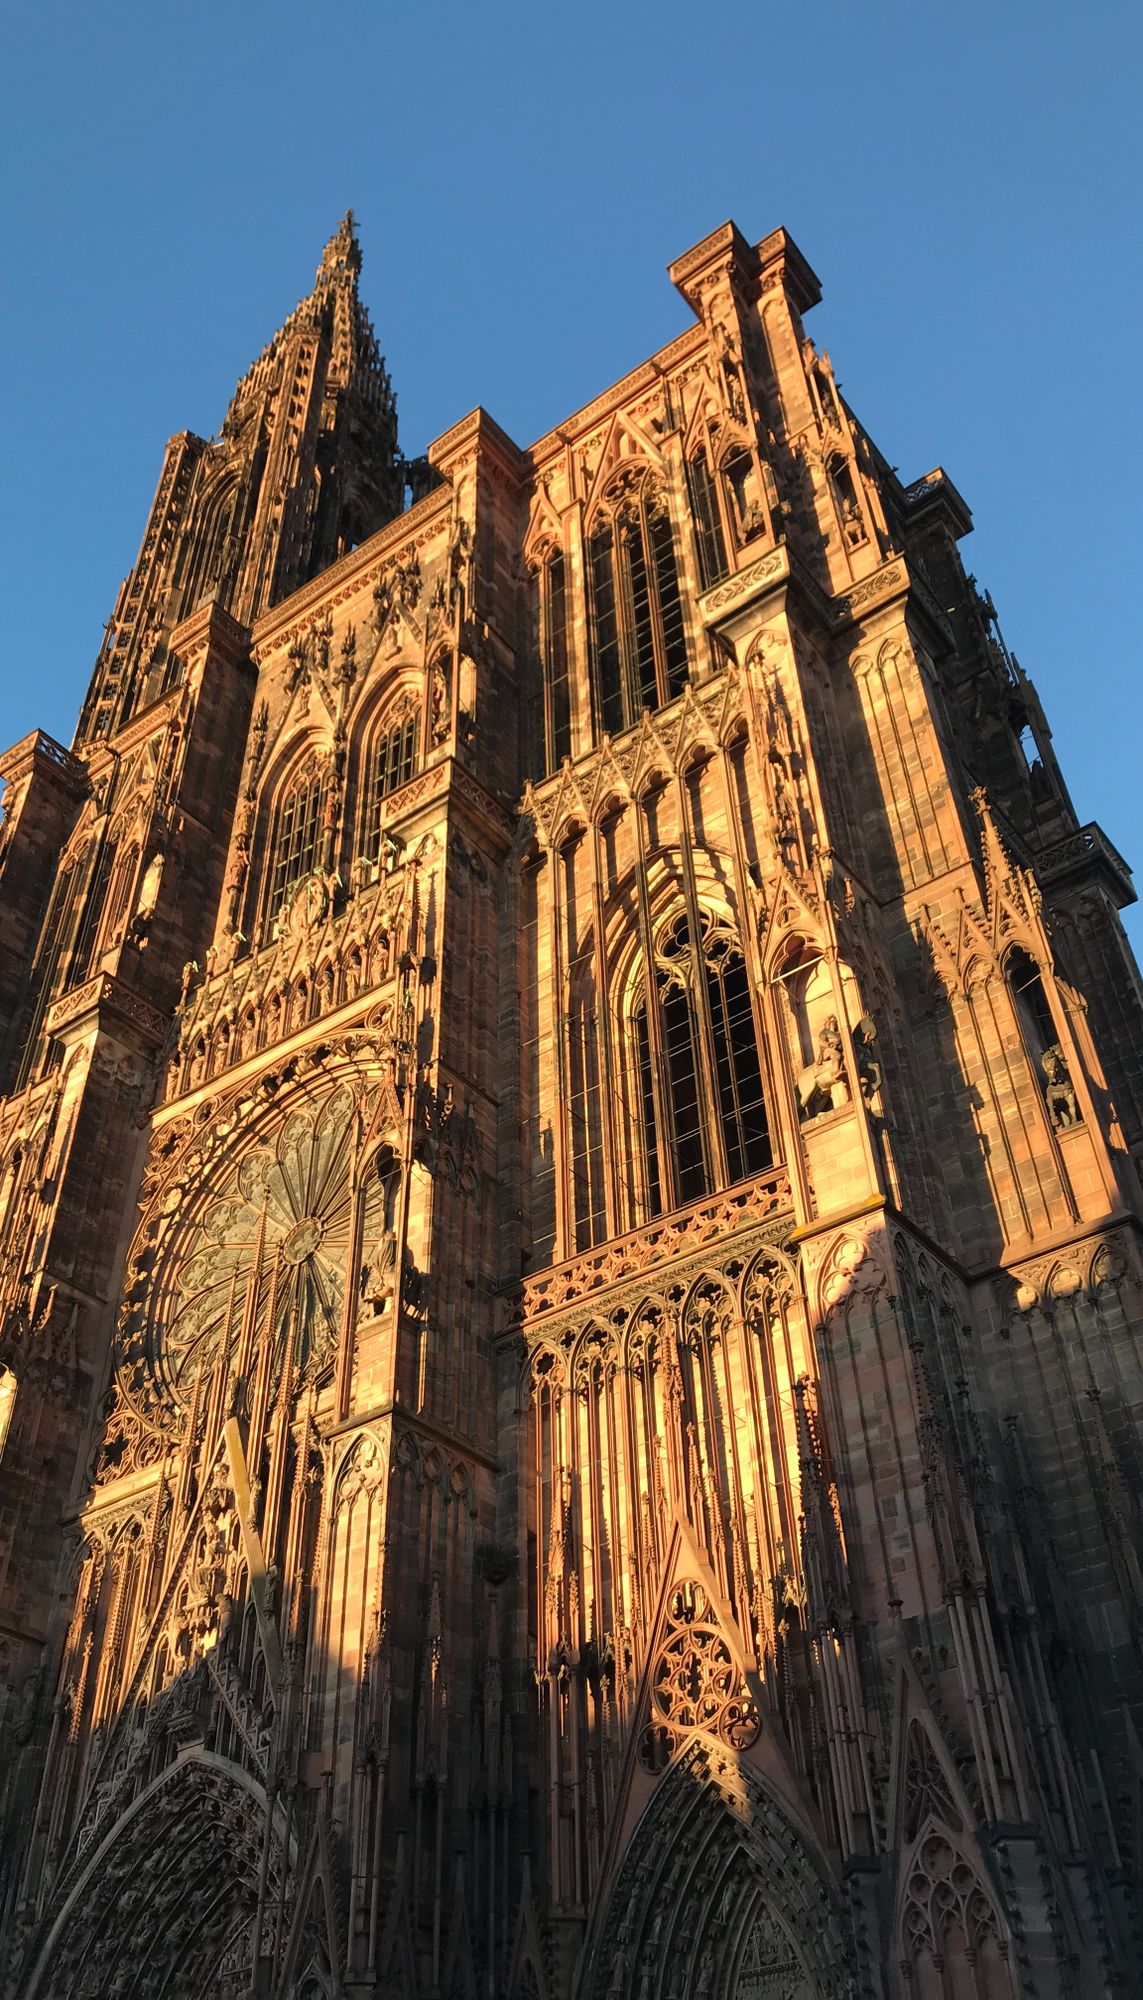 La moyenne annuelle d'ensoleillement a été dépassée à Strasbourg